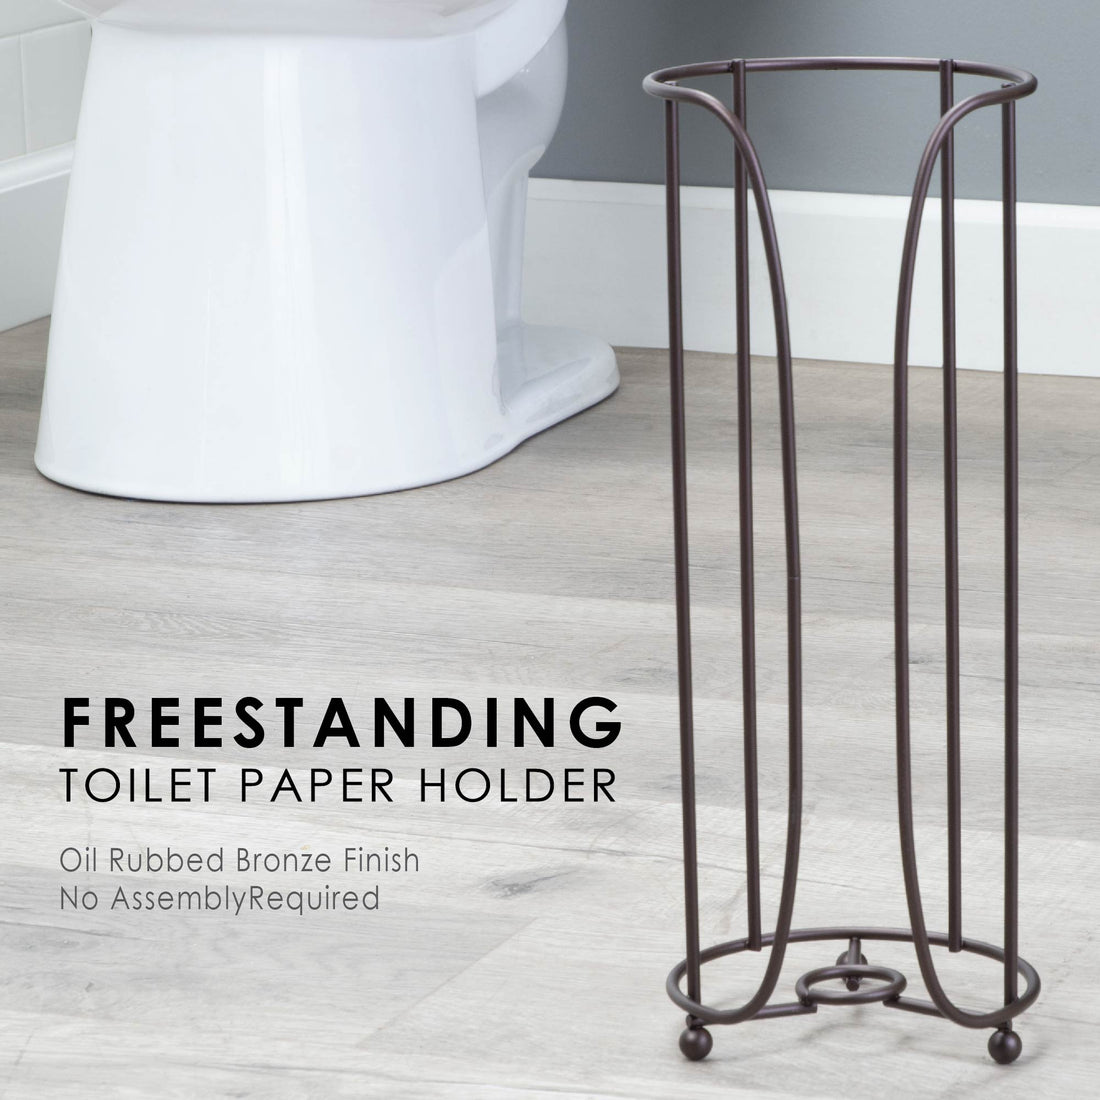 Freestanding Toilet Paper Holder for Standard Rolls (Oil-Rubbed Bronze Finish) - Utility sinks vanites Tehila